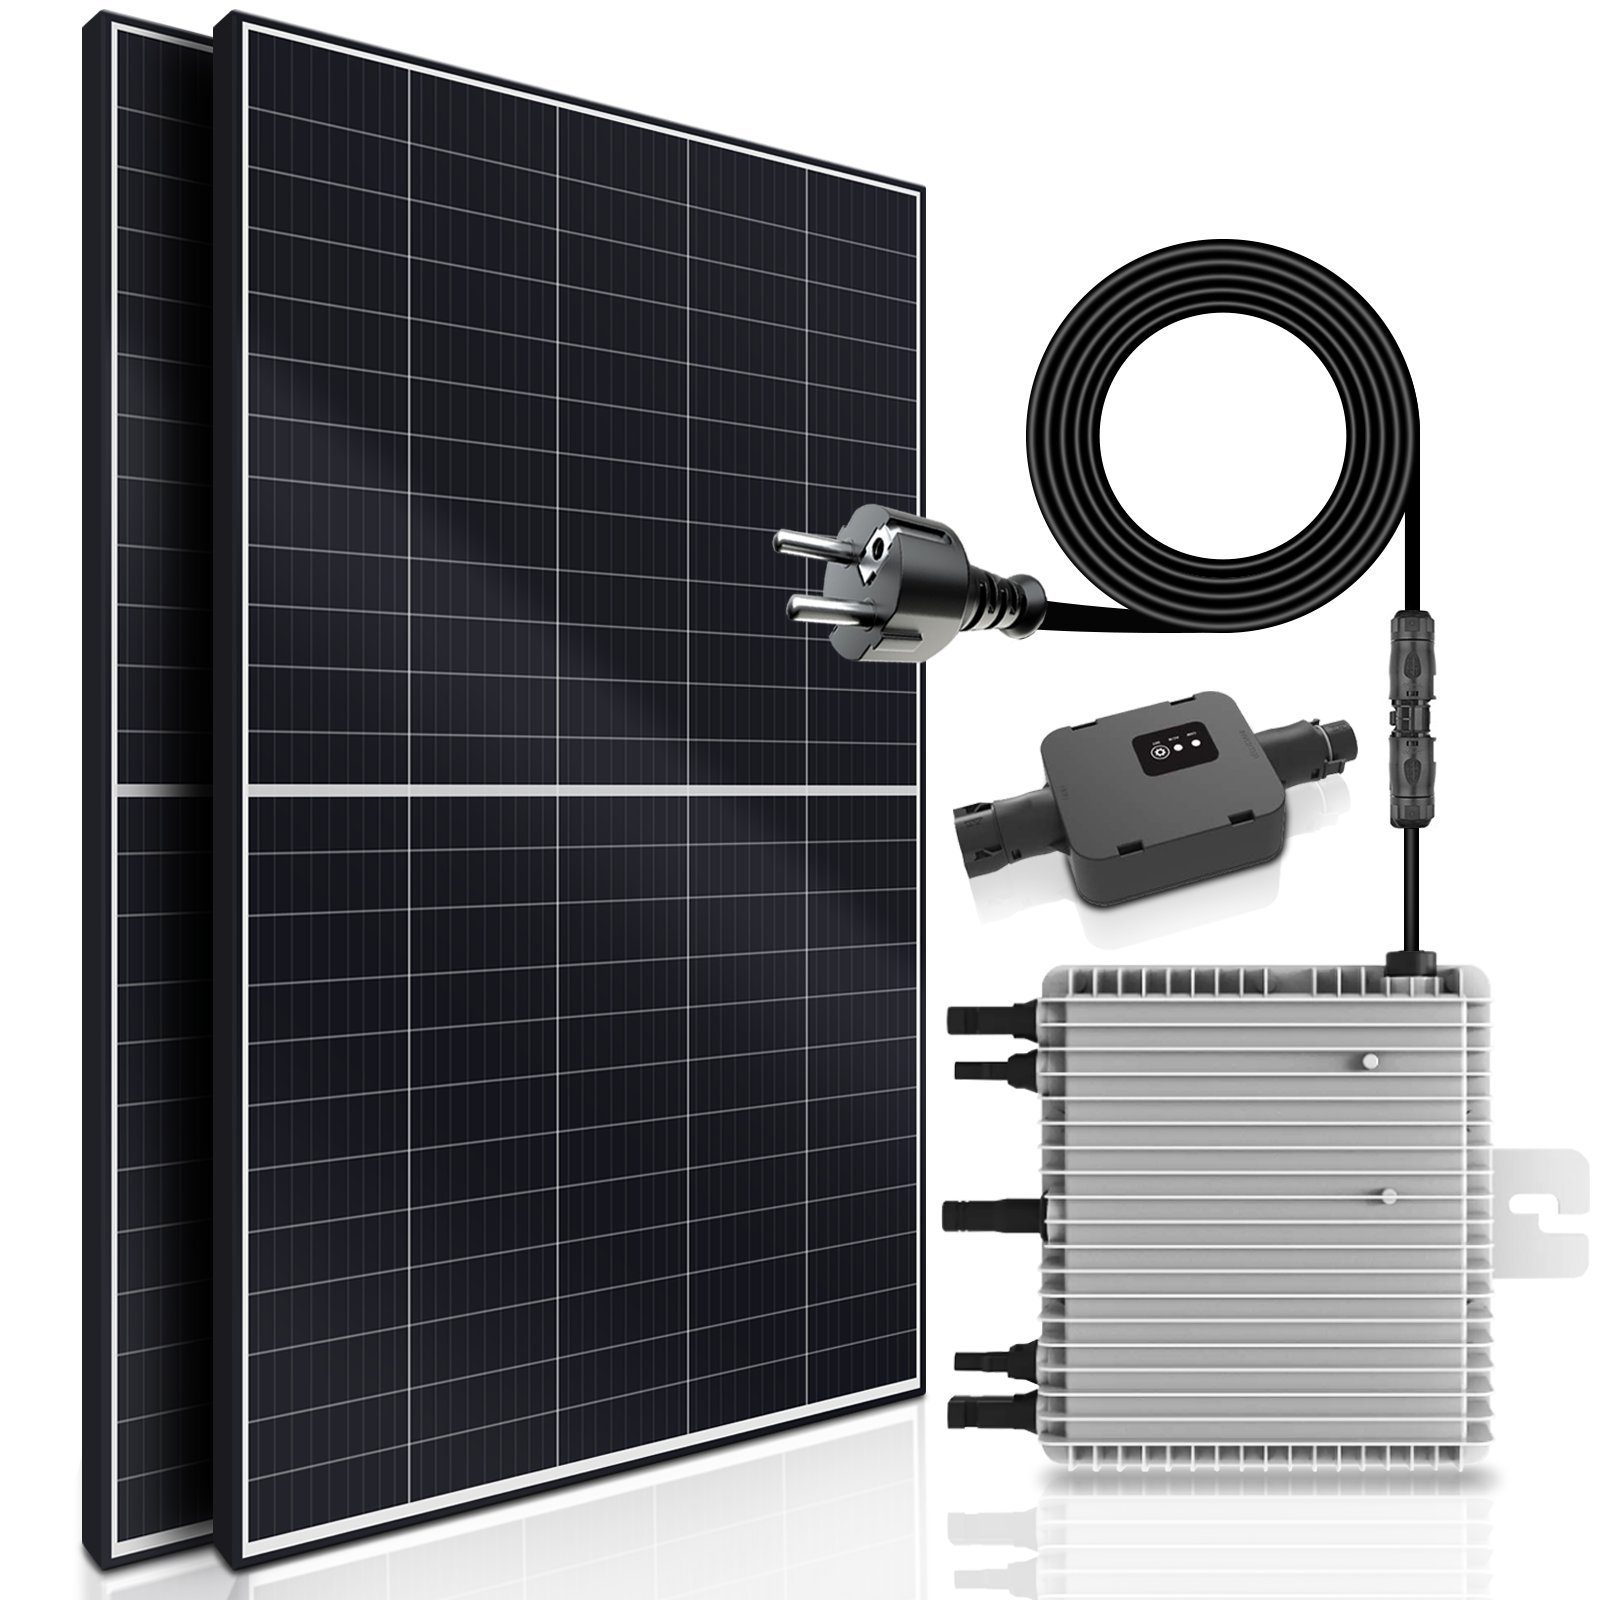 https://i.otto.de/i/otto/d59455f5-8574-4b81-95ba-4d4eacec447d/sunniva-solaranlage-balkonkraftwerk-830w-800-00-w-monokristallin-deye-wechselrichter-drosselbar-auf-600w-oder-800w-solaranlage-komplettset-mit-5m-anschlusskabel-fuer-schuko-steckdose-balkon-mini-pv-anlage-mit-wifi-app-und-stromerzeugung-messung-upgrade-genehmigungsfrei-steckerfertig.jpg?$formatz$